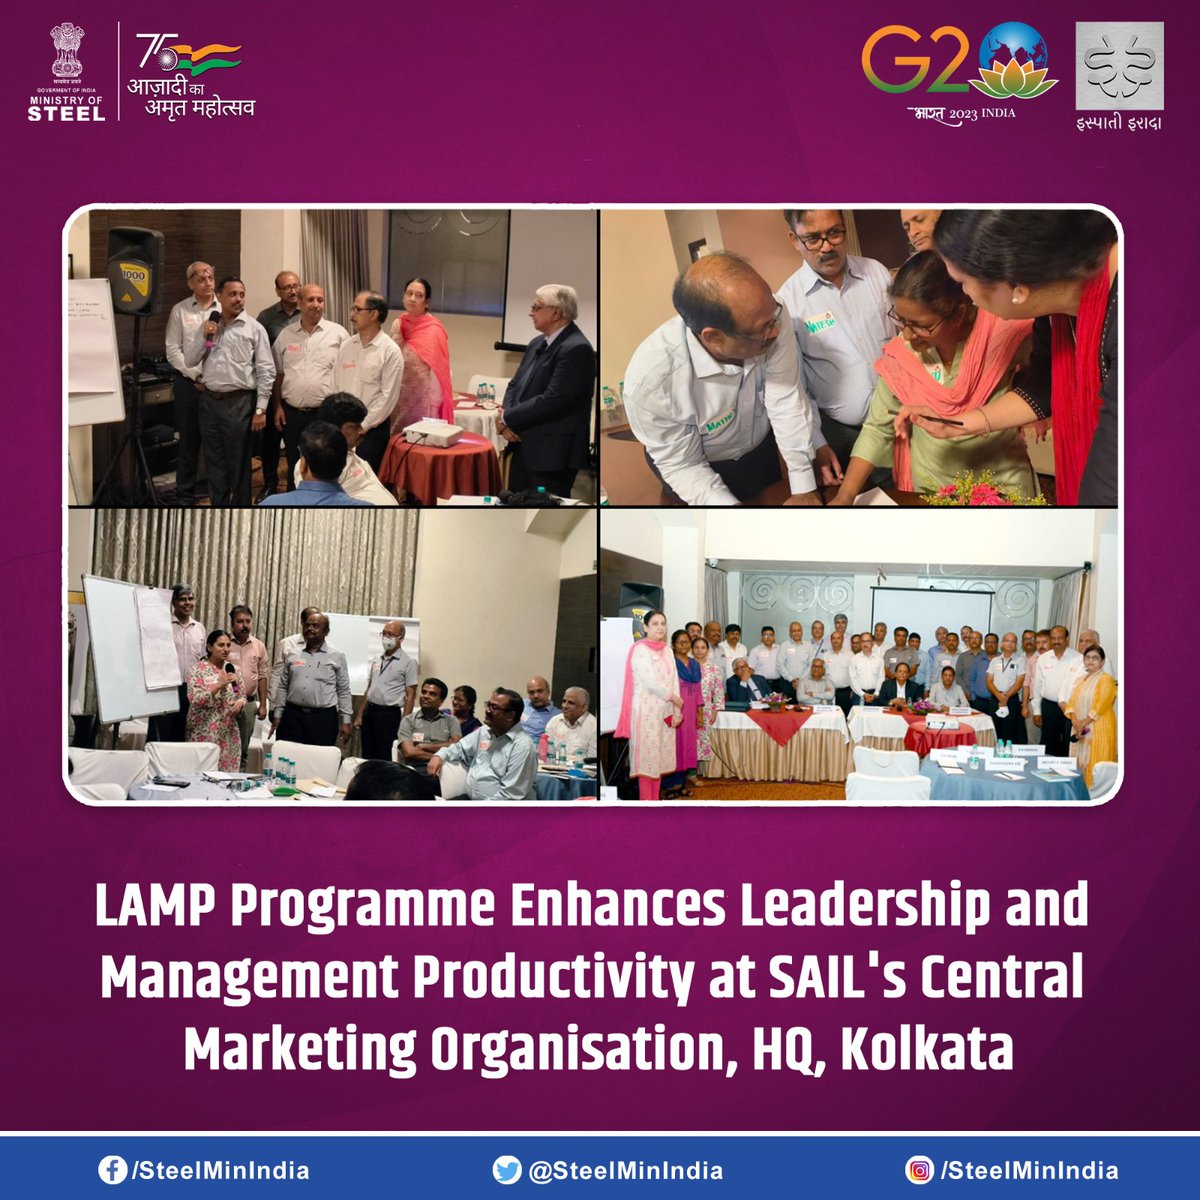 कोलकाता में #सेल के केंद्रीय विपणन संगठन ने 25 वरिष्ठ अधिकारियों के लिए LAMP कार्यक्रम आयोजित किया।

#SAIL #SAILsteel #LeadershipProgramme #Kolkata #LeadershipDevelopment #ManagementExcellence #LAMP